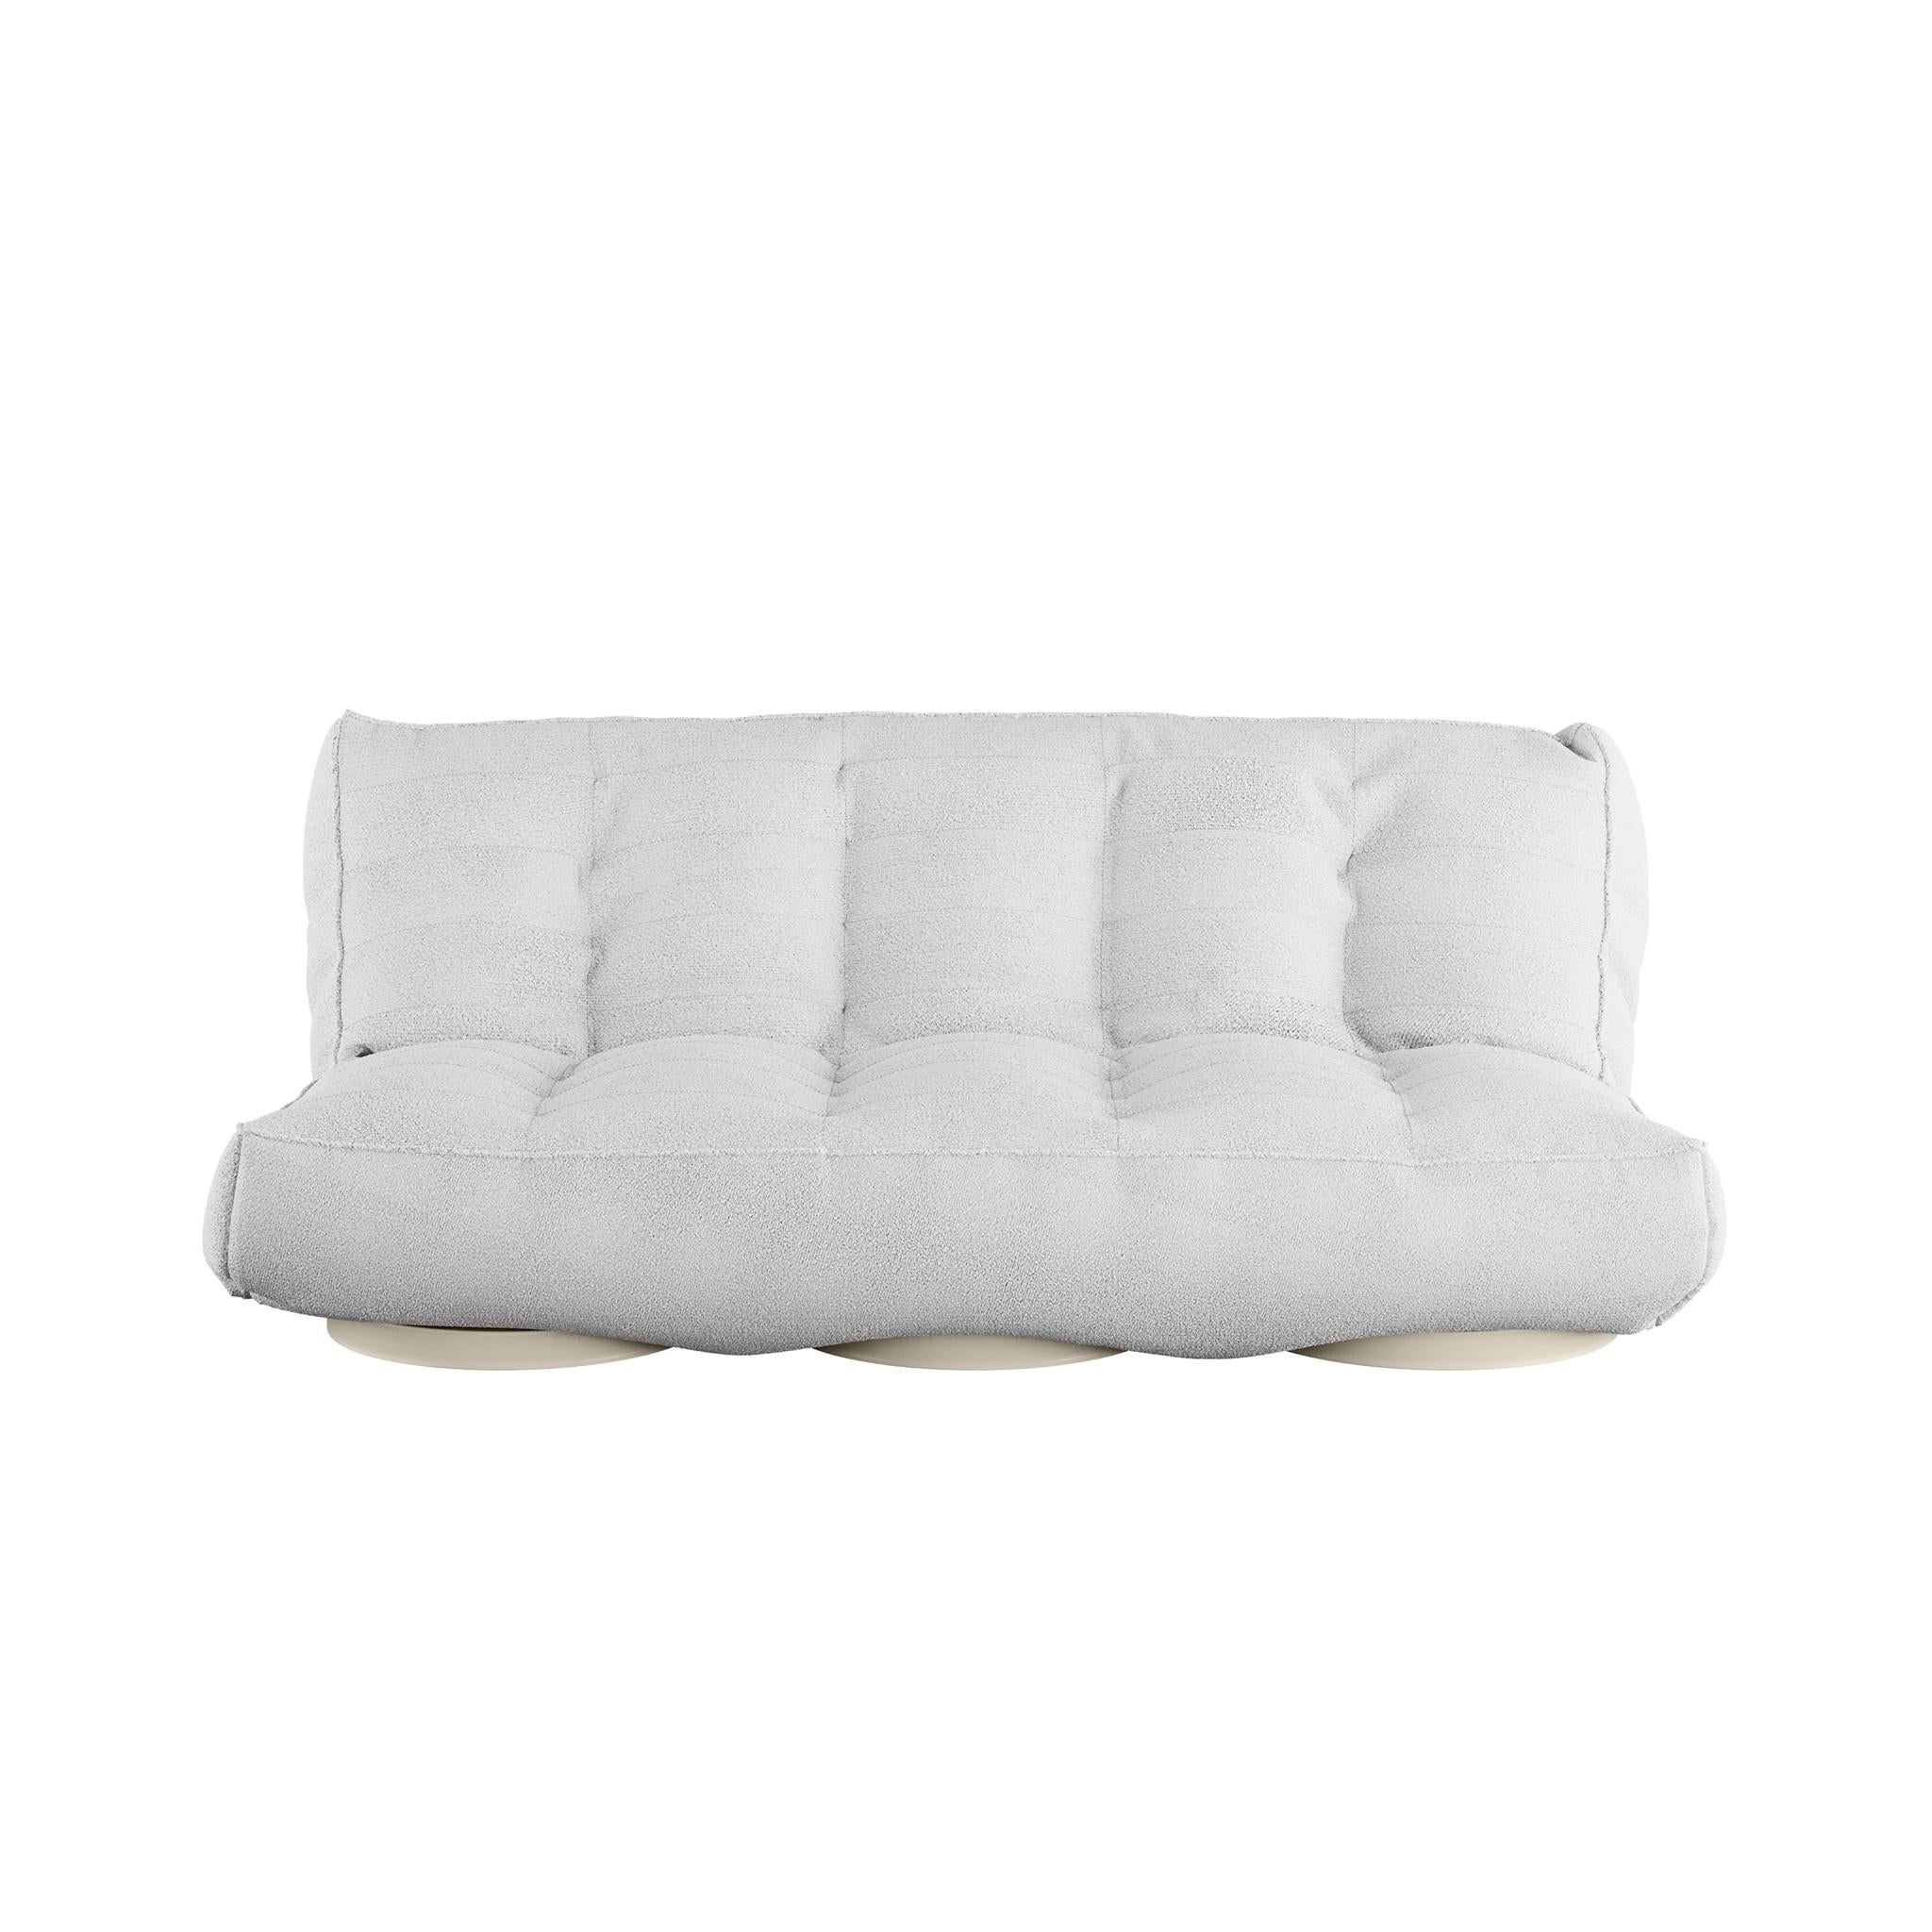 Foil Daybed ist ein luxuriöses Daybed. Sind Sie auf der Suche nach einem modernen Sofa, dessen Design nicht mit der Zeit verblasst? Sie haben es gefunden. Die ergonomische Struktur und die feinen Details von Foil machen ihn bequem, luxuriös und